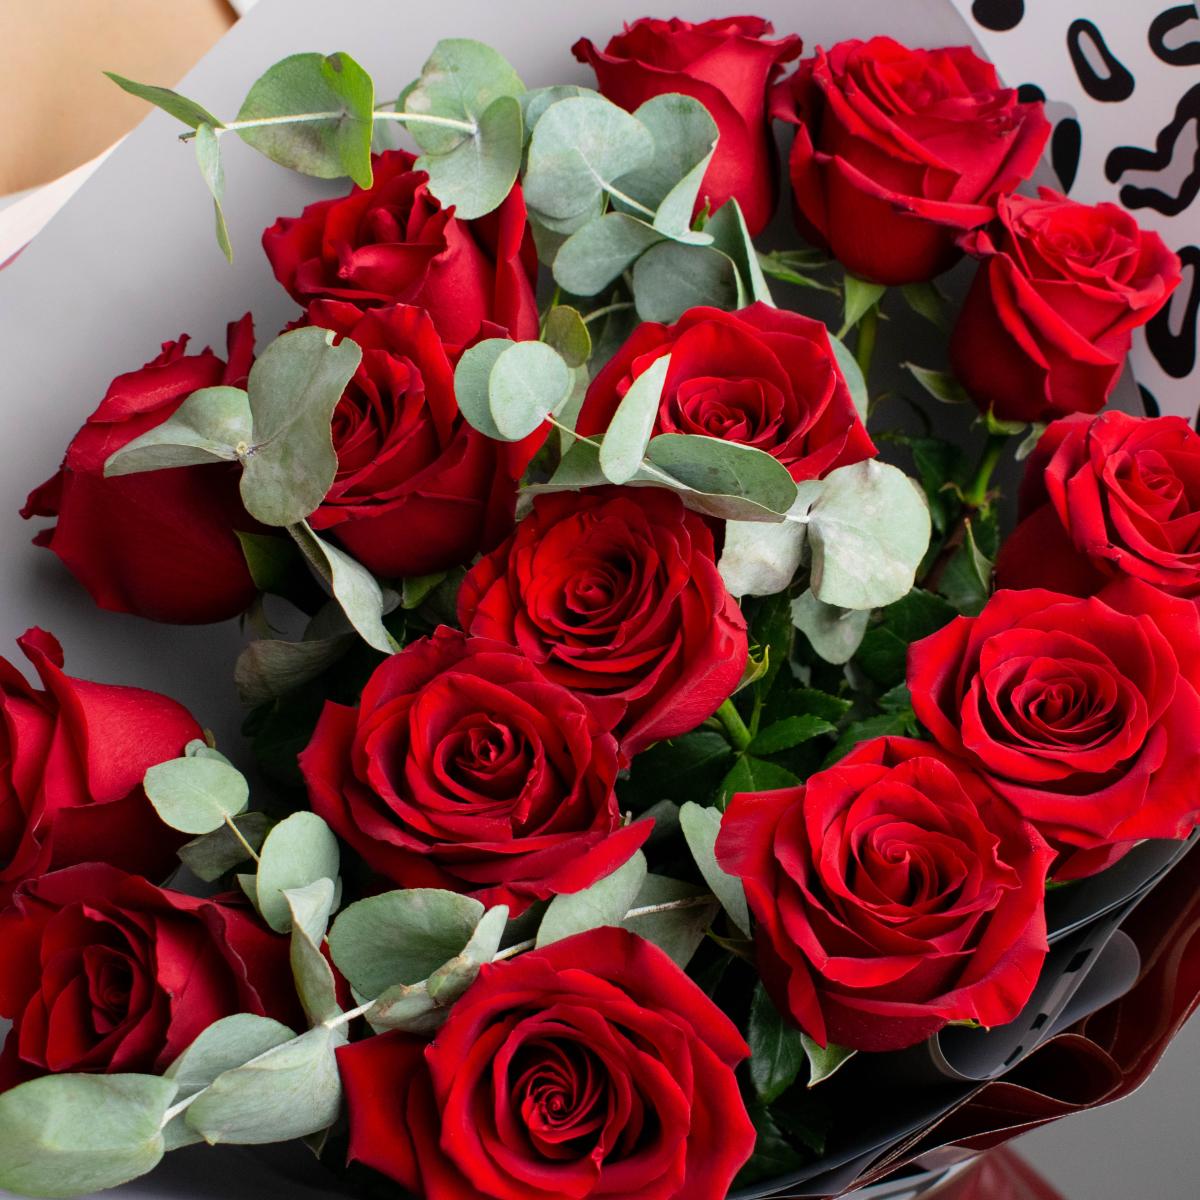 15 красных роз с листьями эвкалипта